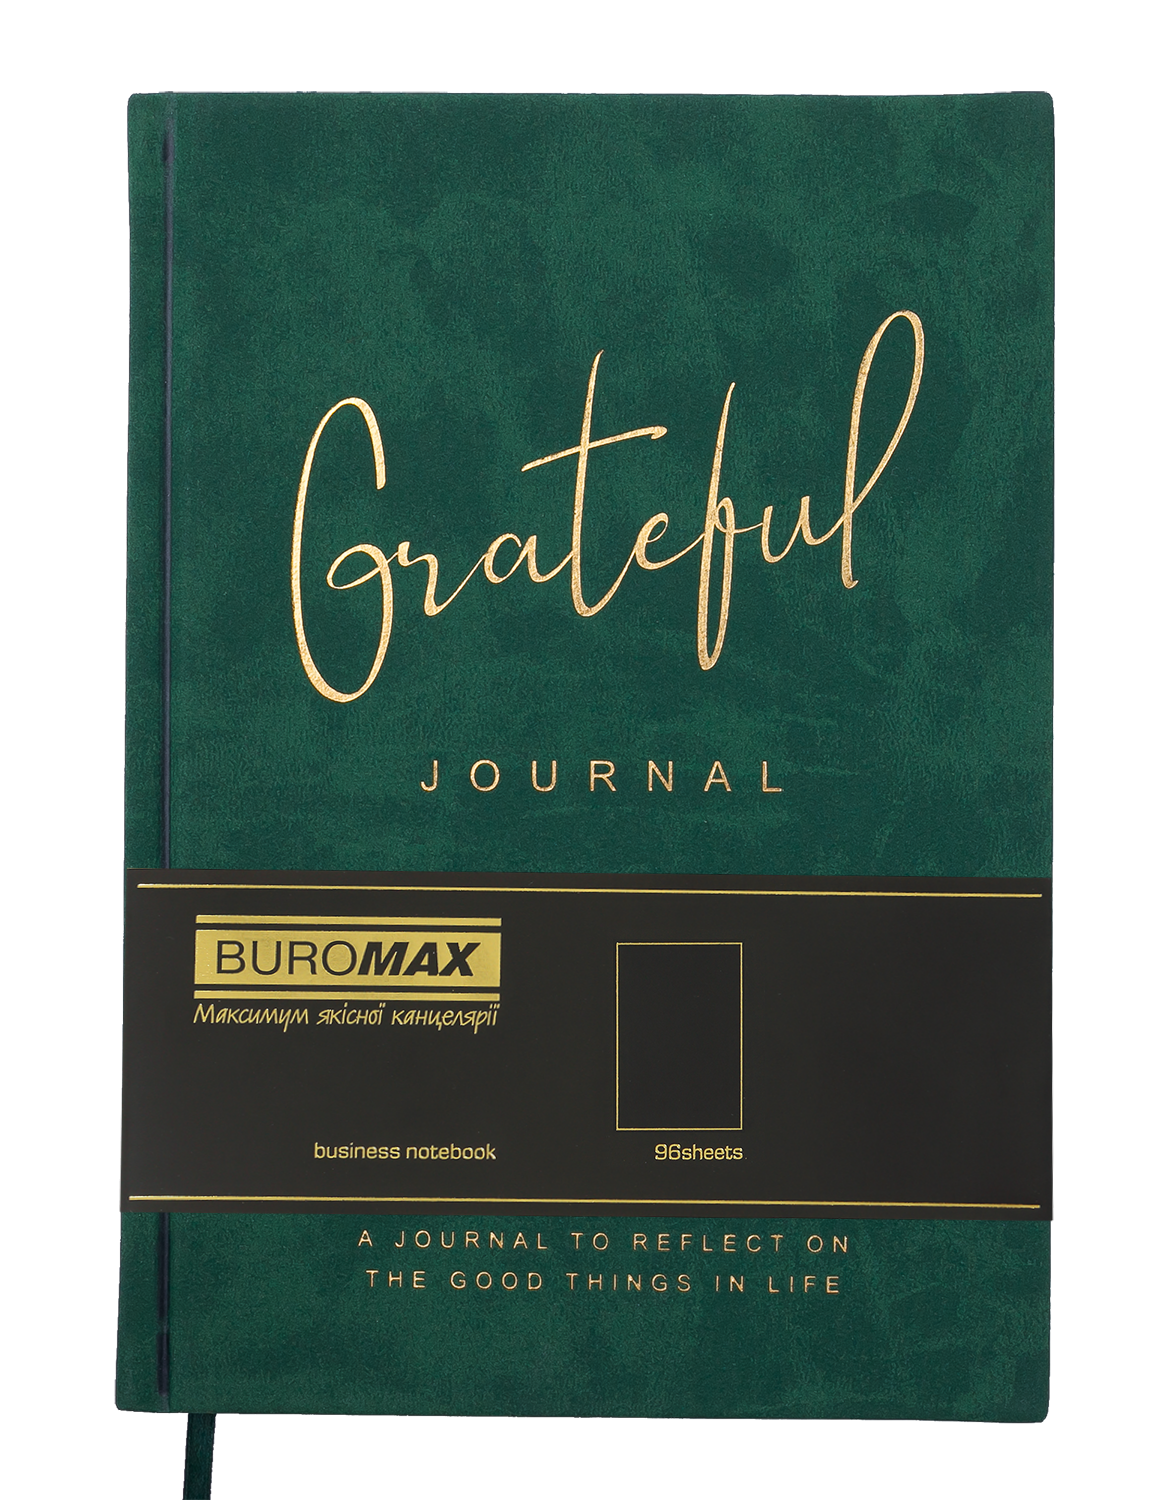 Блокнот деловой Buromax Grateful А5 96 л. без линирования обложка искусственная кожа зеленый (BM.295019-04) - фото 2